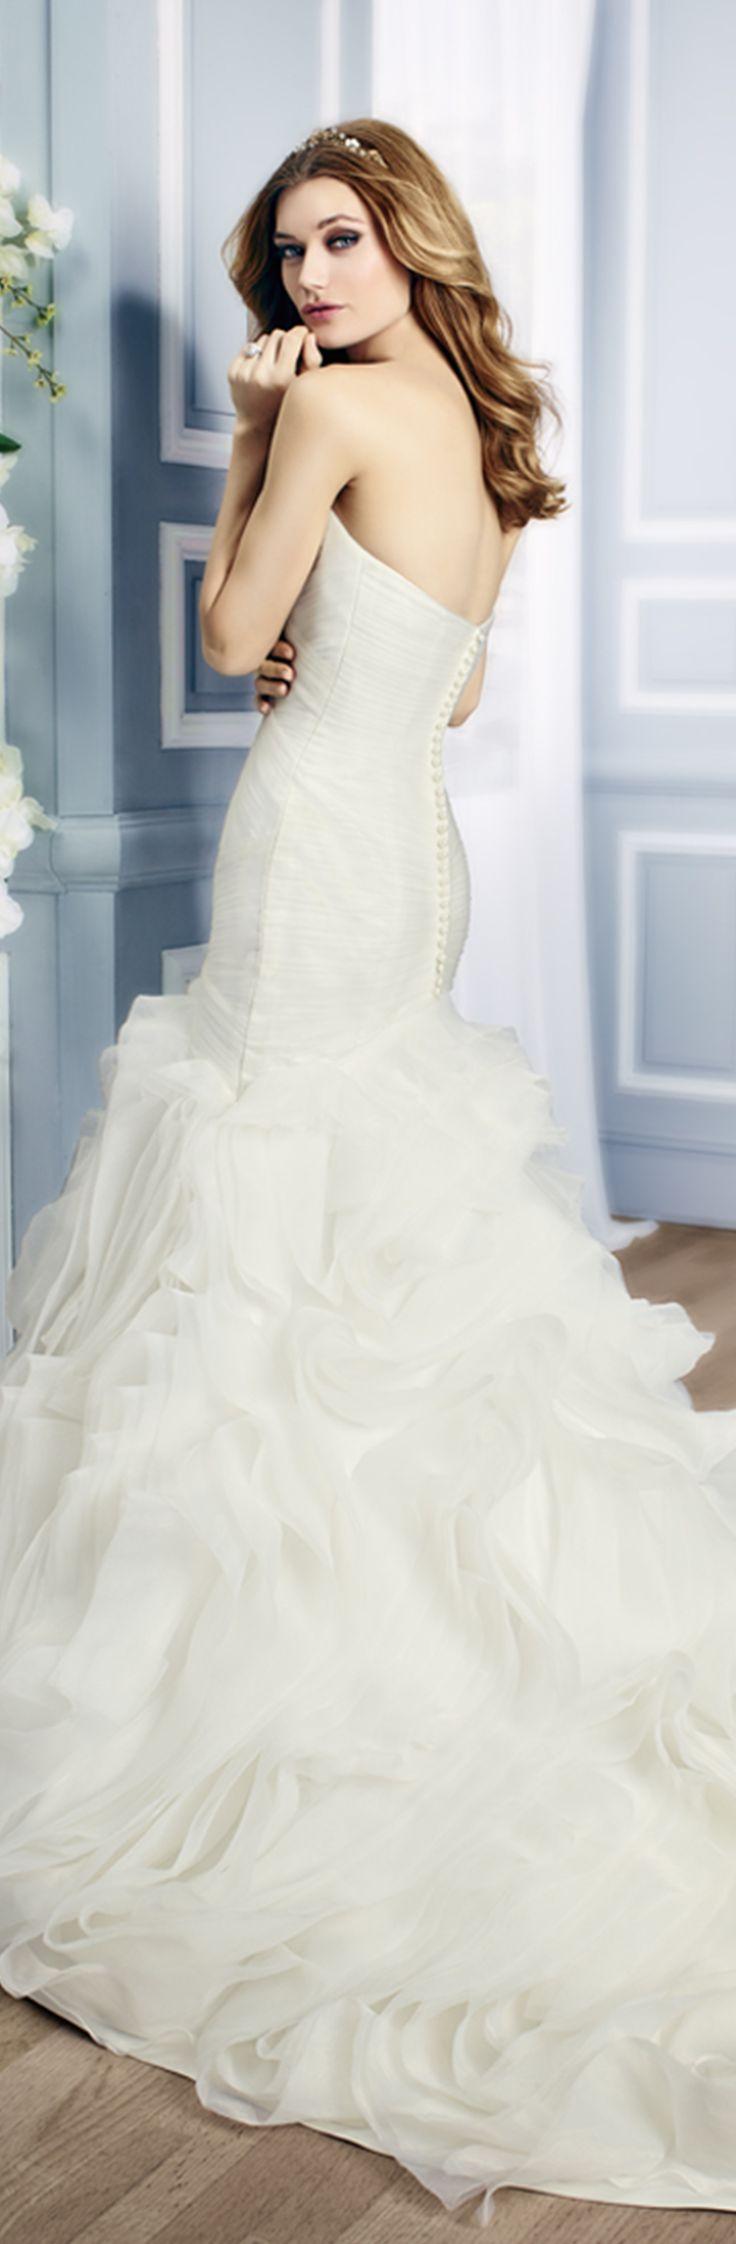 زفاف - Glamourous Drop Waist Wedding Dress With Ruffled Skirt 